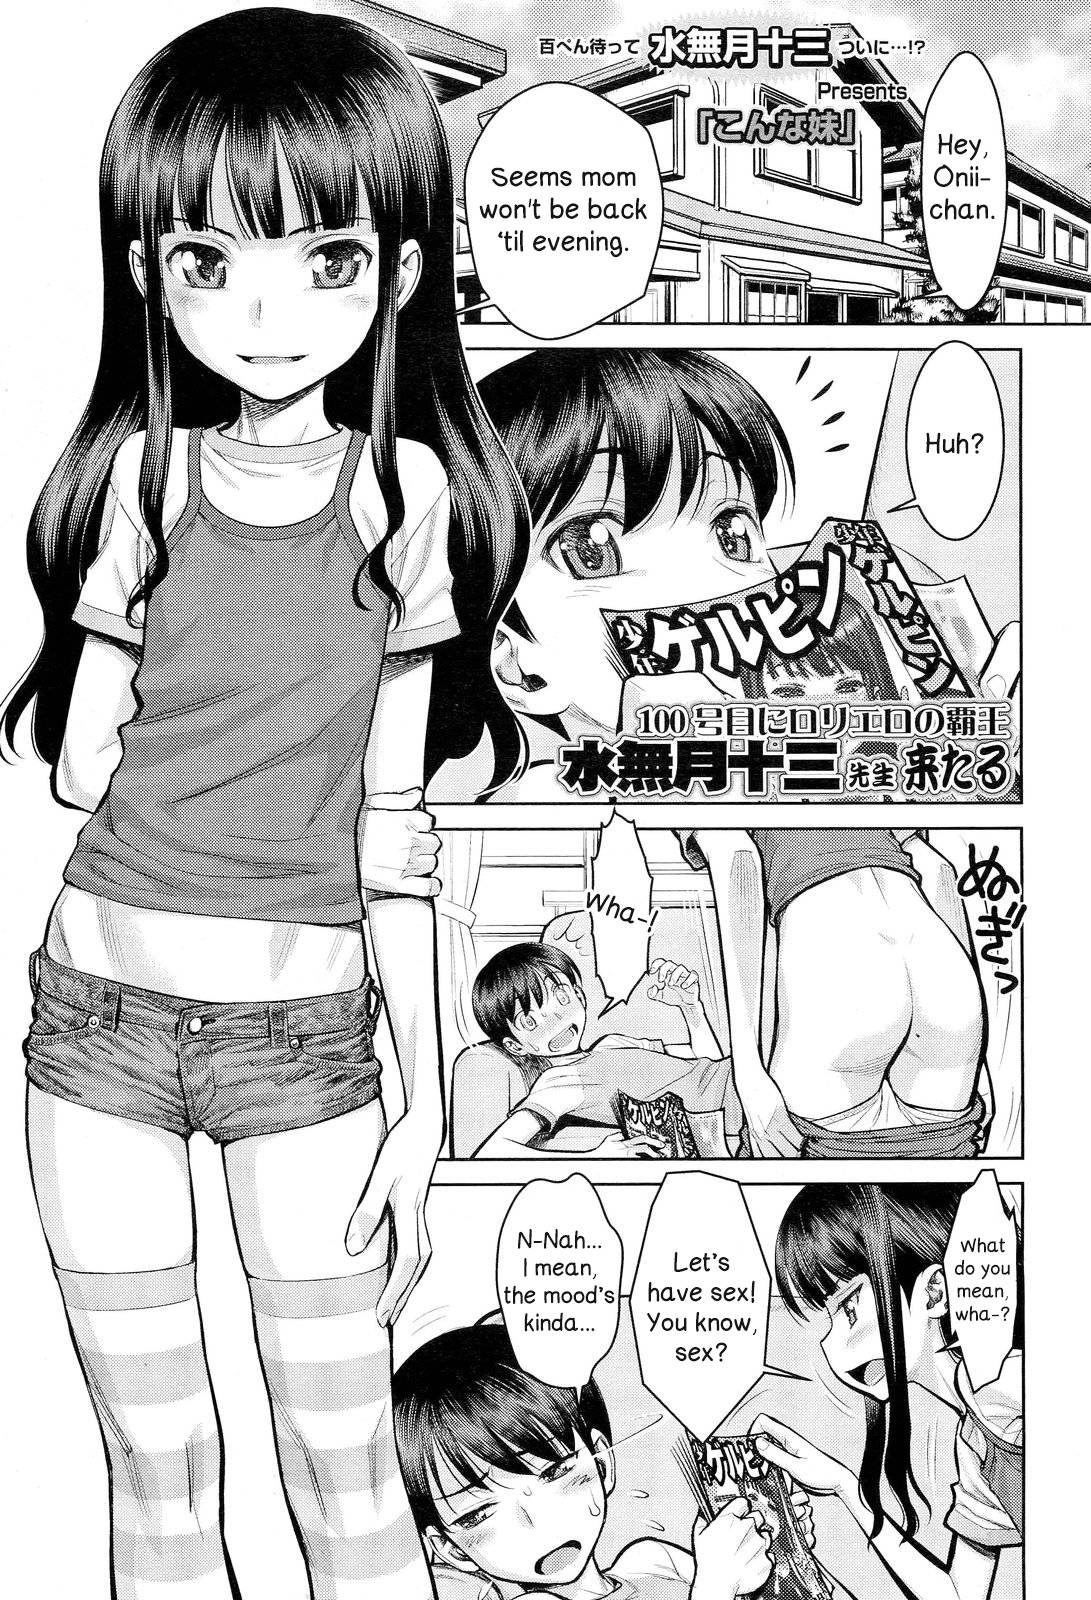 read hentai manga english